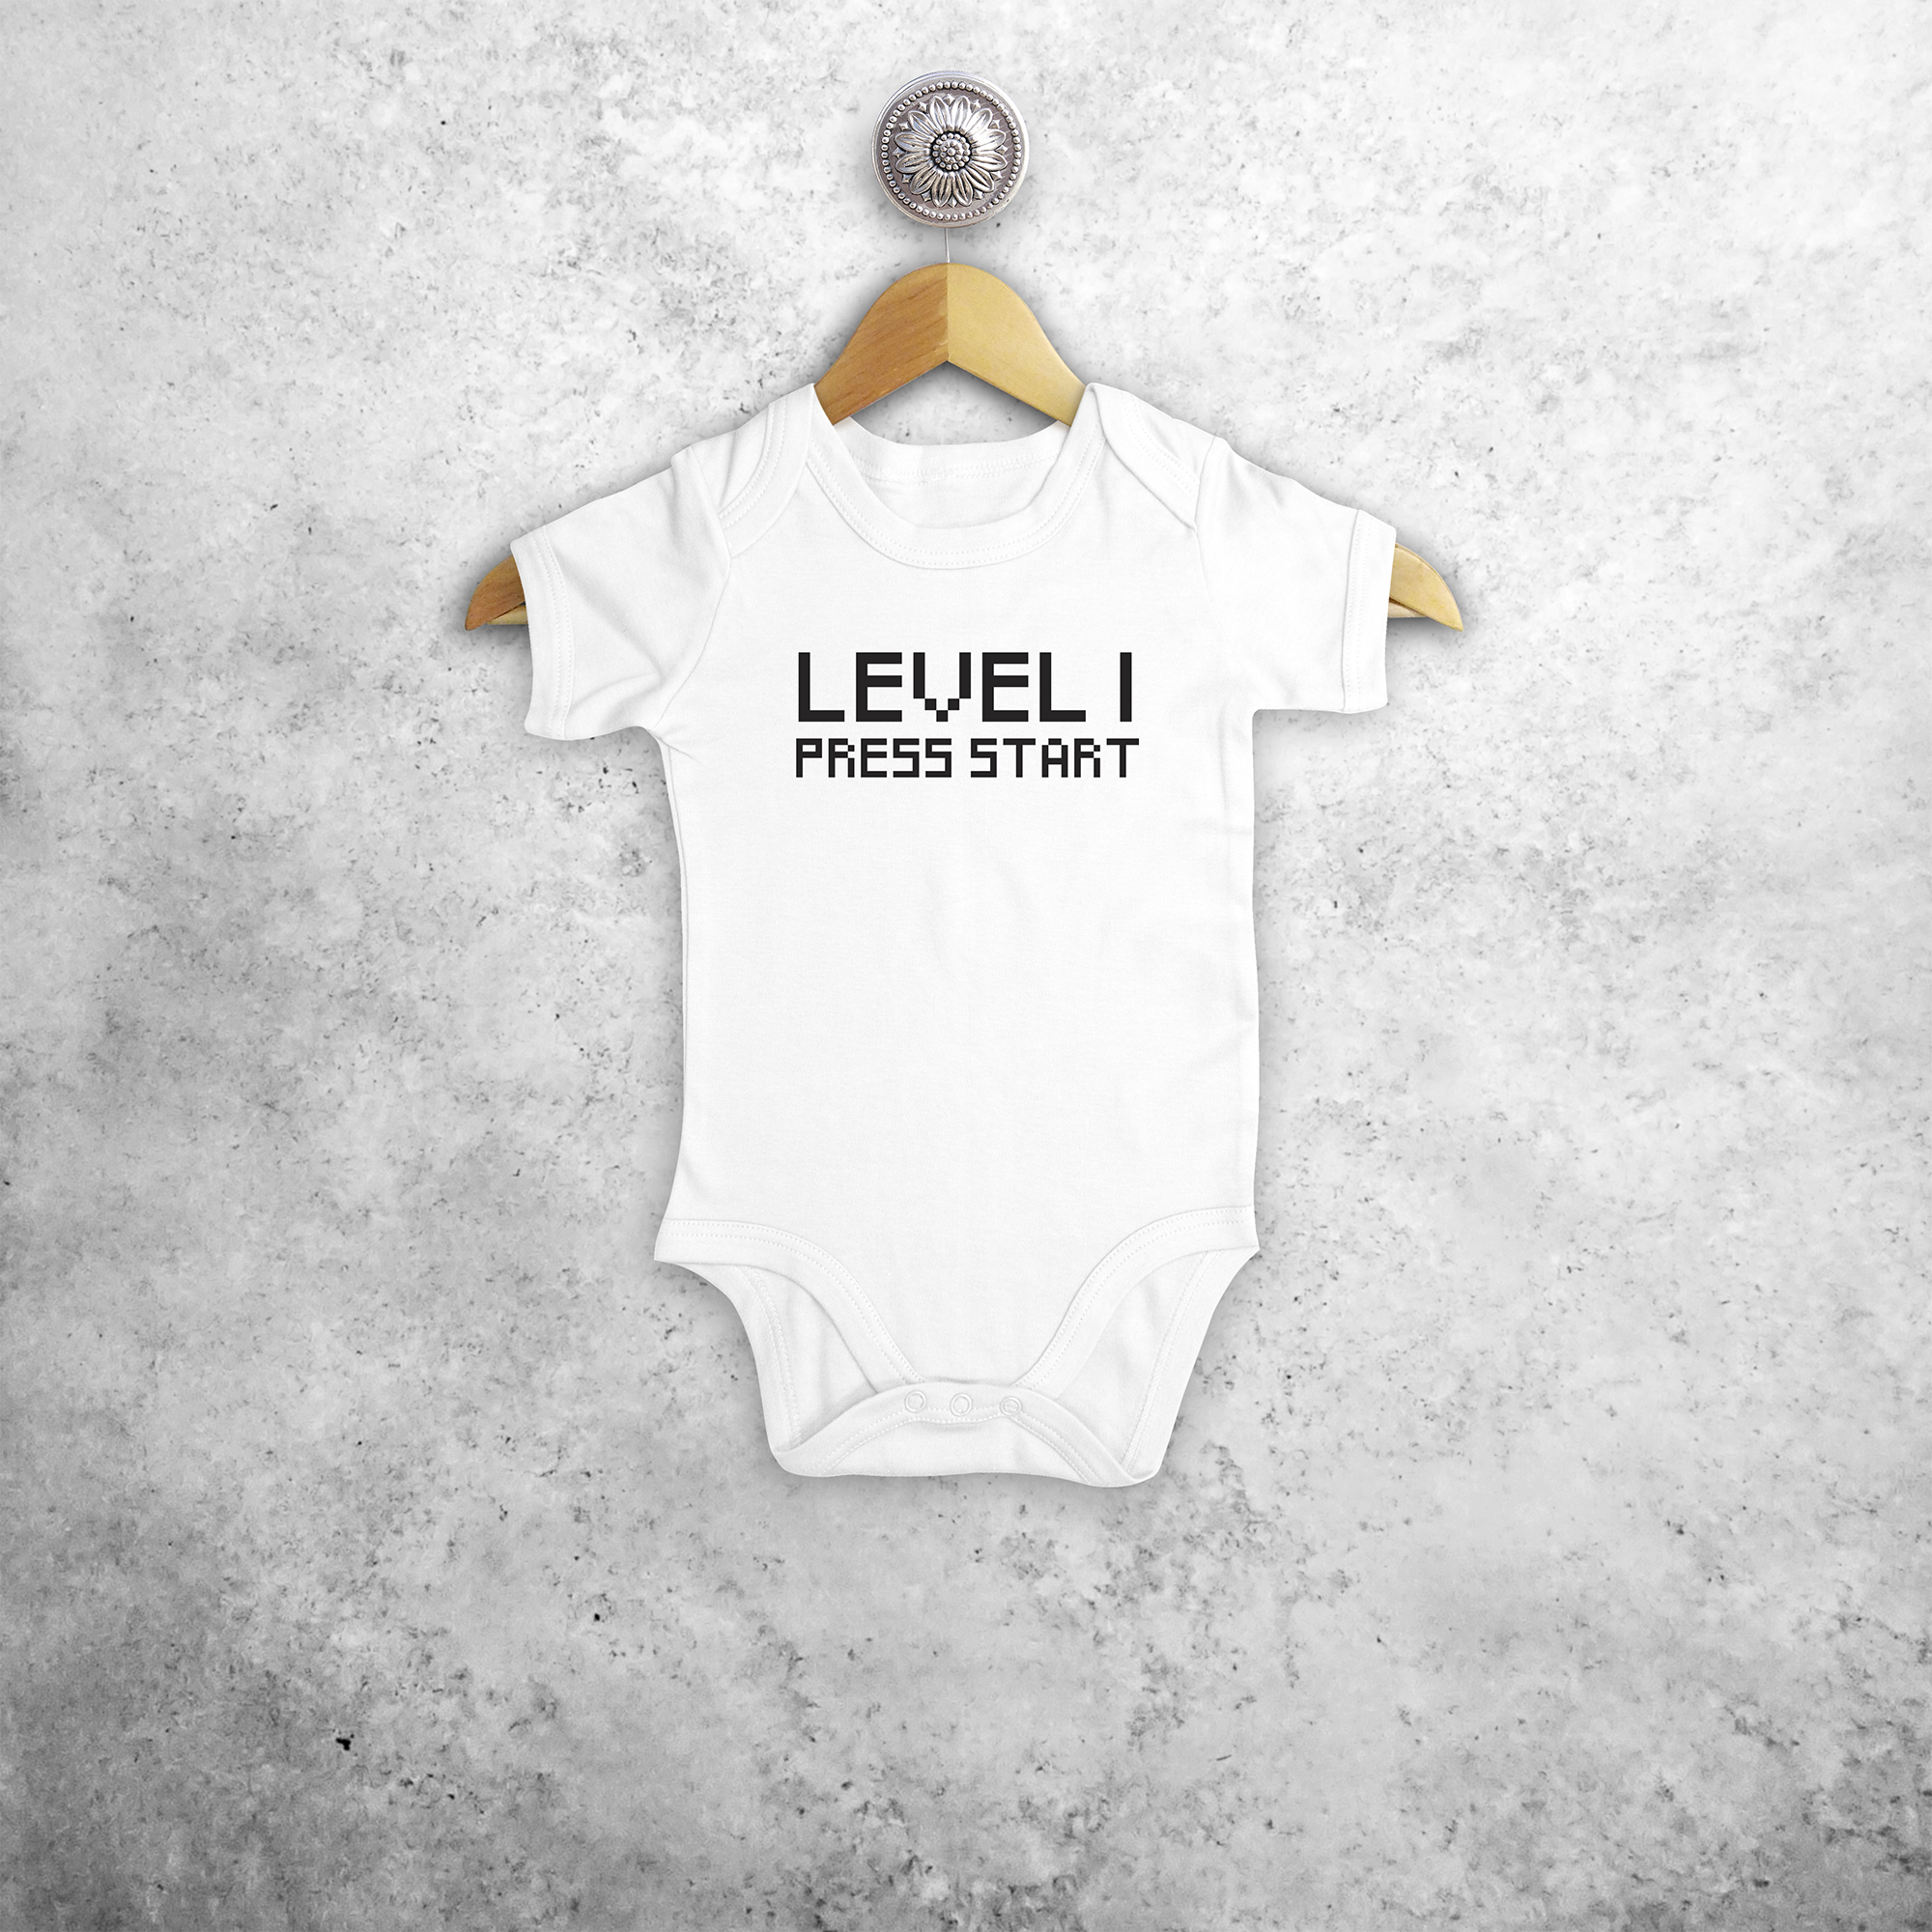 'Level... - Press start' baby shortsleeve bodysuit